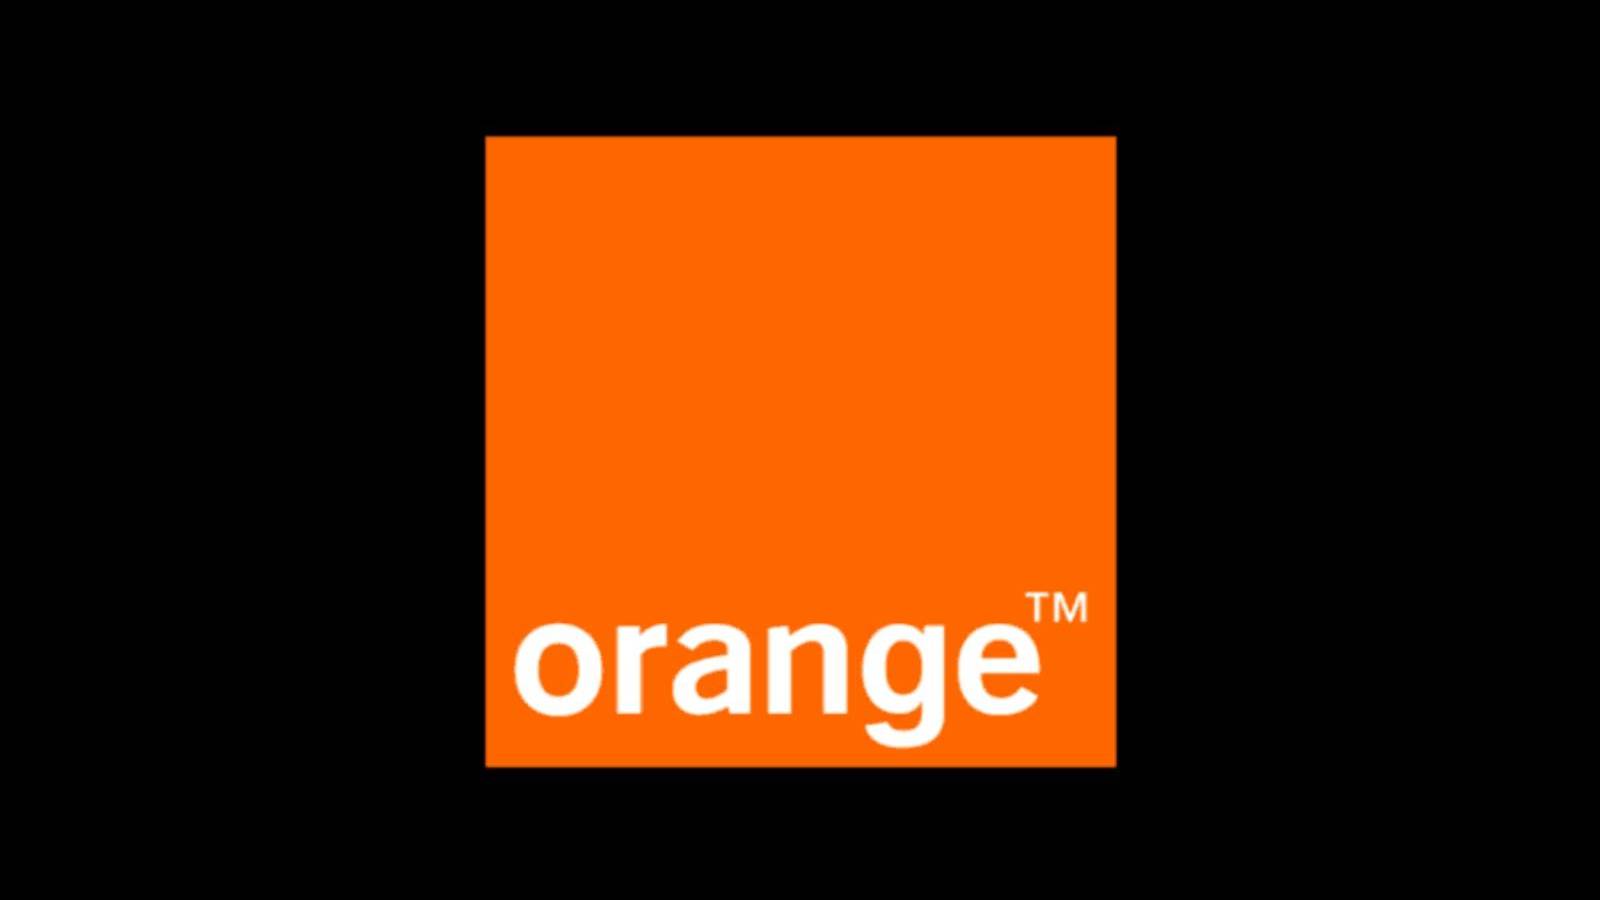 Orangen virallinen ilmoitus, kuinka paljon rahaa se antaa ILMAISEKSI romanialaisille asiakkaille